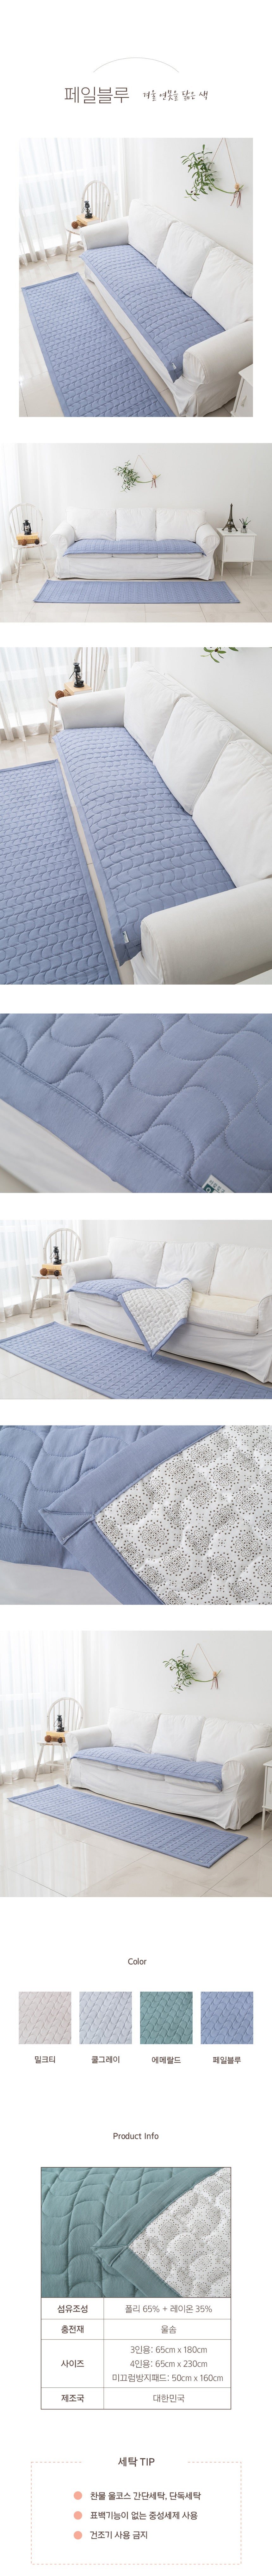 흡습발열성 누빔 소파 패드 180230(cm) Moisture-wicking Fabric Quilted Sofa Pad